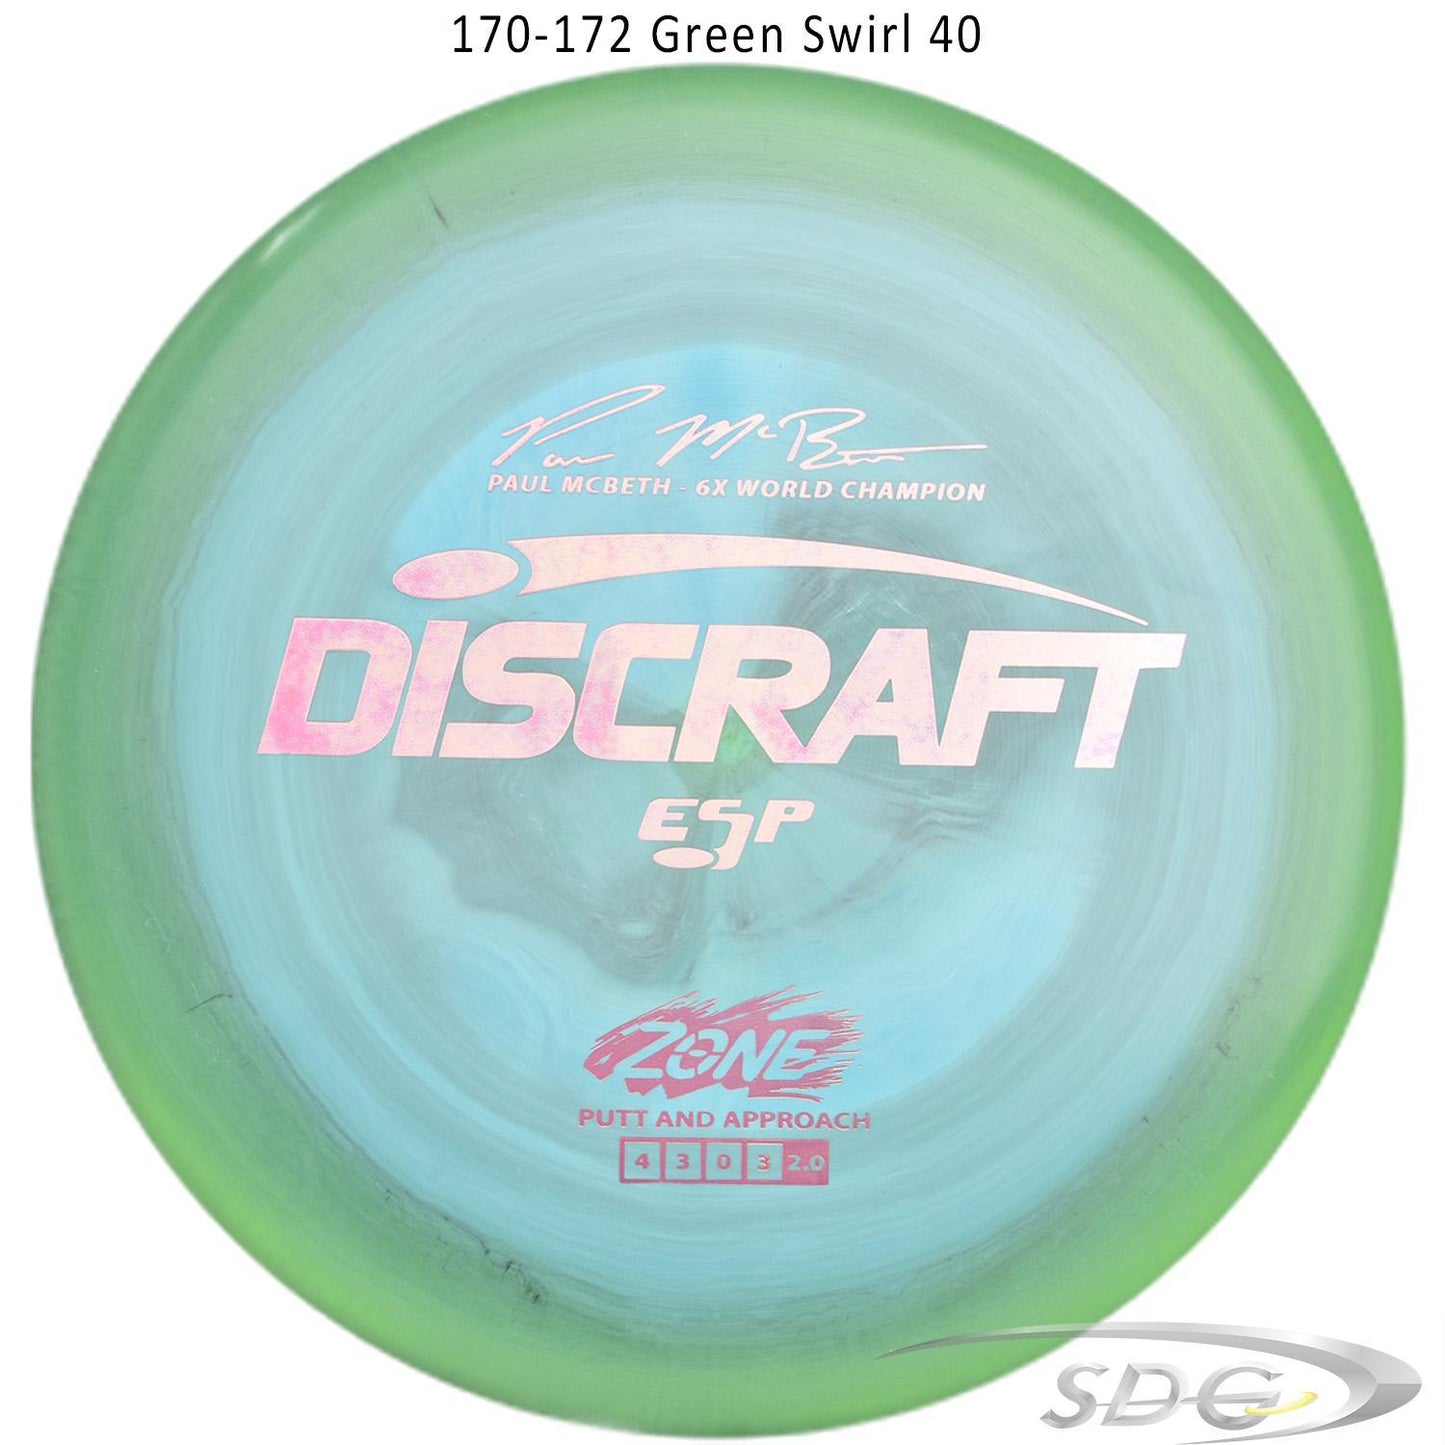 discraft-esp-zone-6x-paul-mcbeth-signature-series-disc-golf-putter 170-172 Green Swirl 40